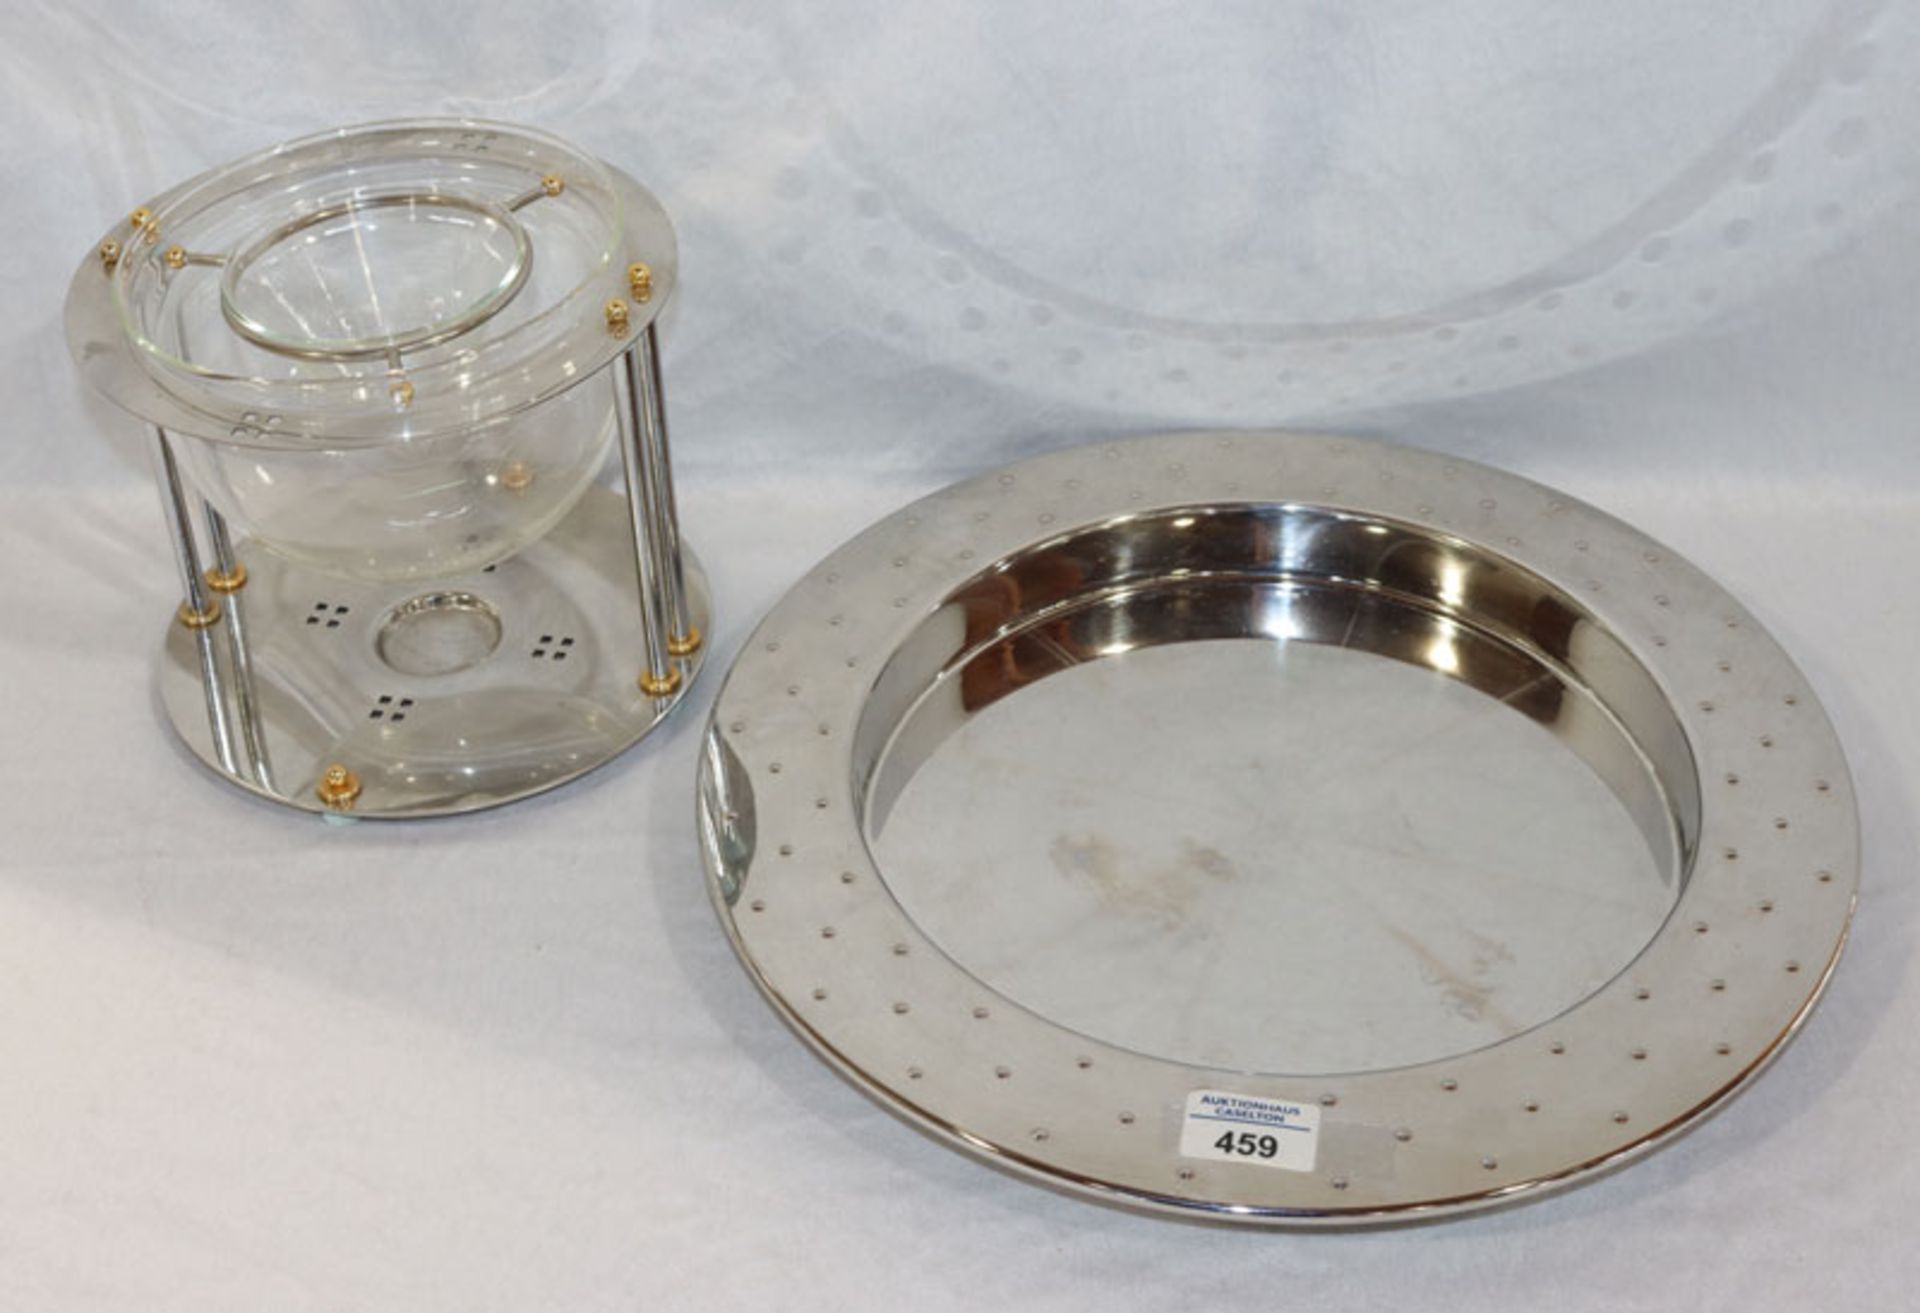 Alessi Tablett, Edelstahl poliert, D 38 cm, und Metallgestell mit Bodum Glasschale, H 18 cm, D 21